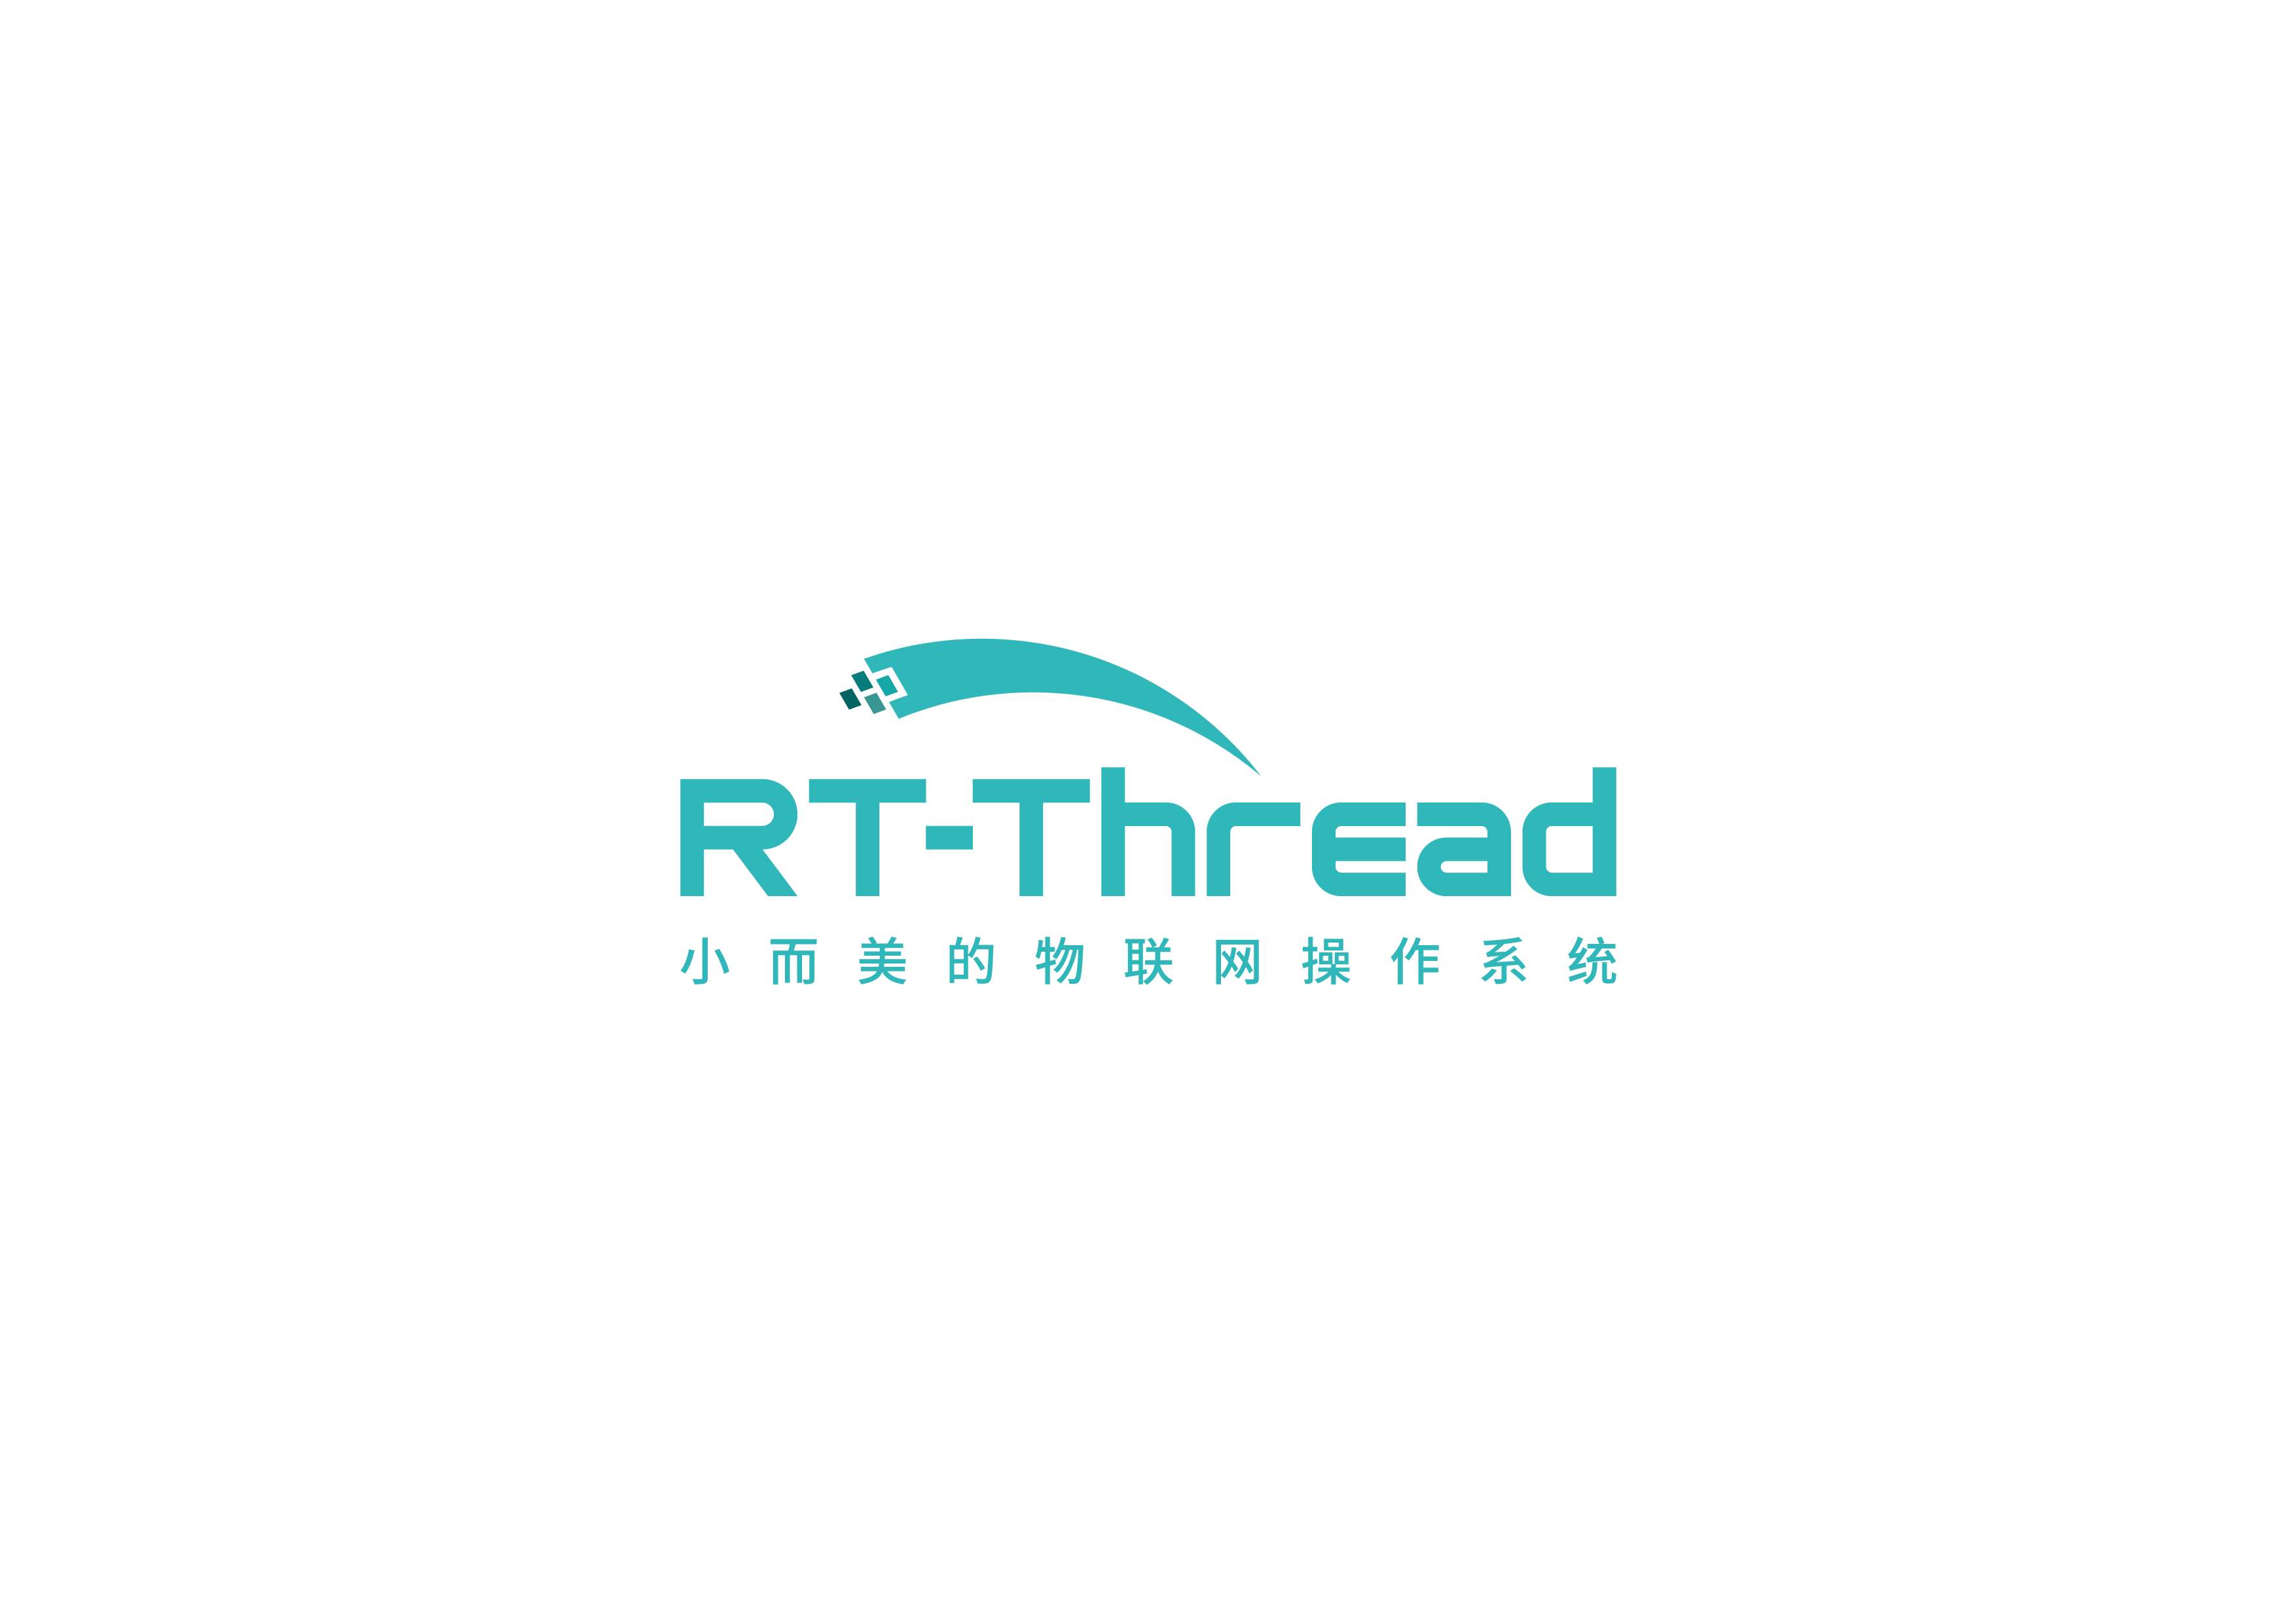 RT-ThreadIoTOS